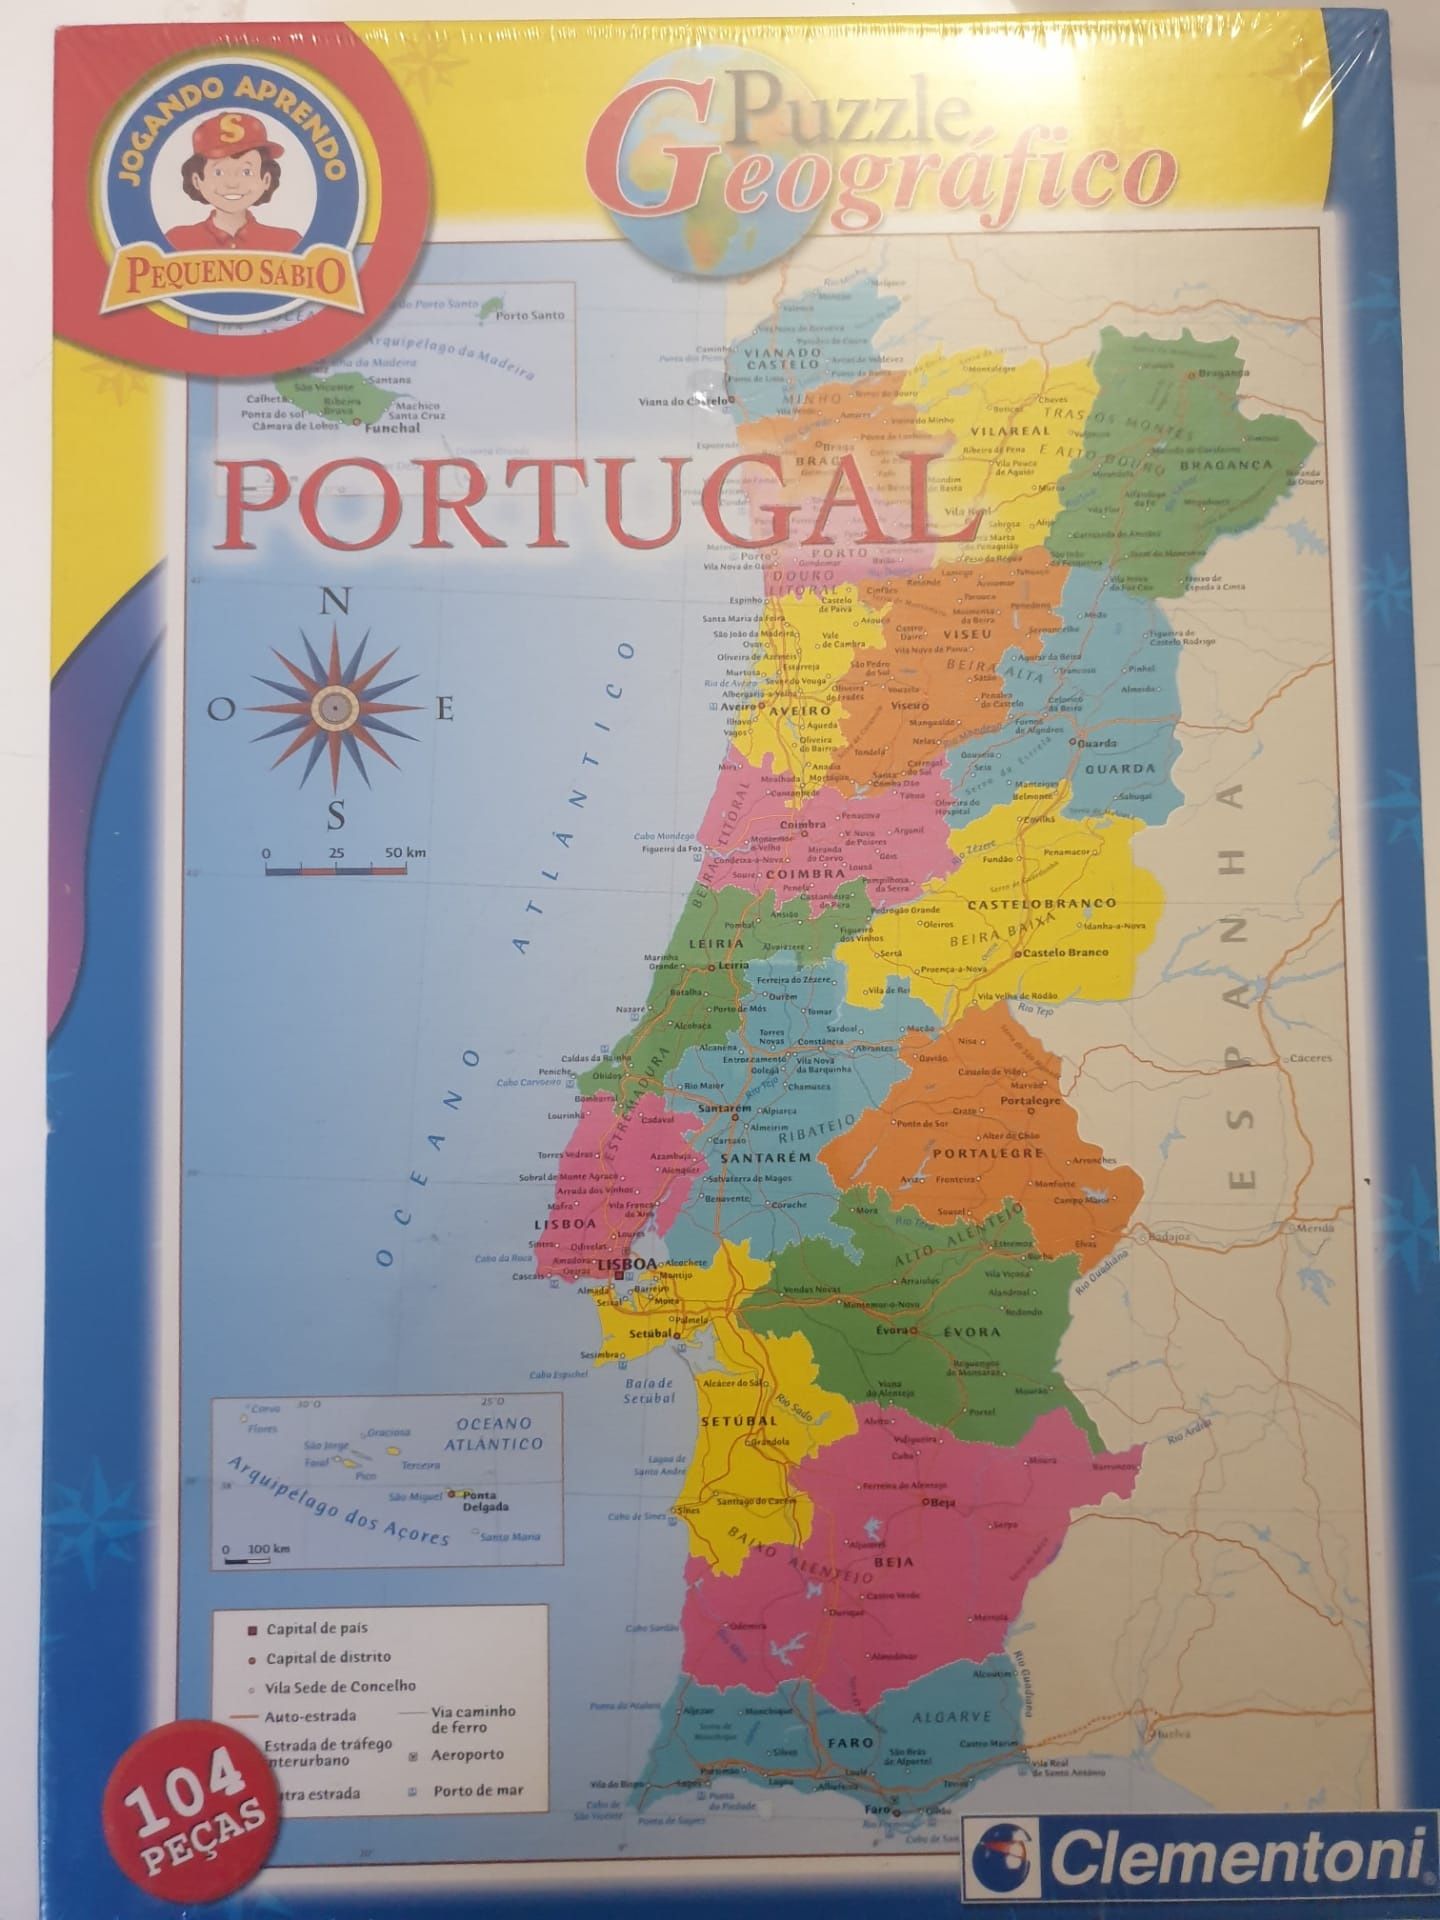 Puzzle geográfico Portugal selado